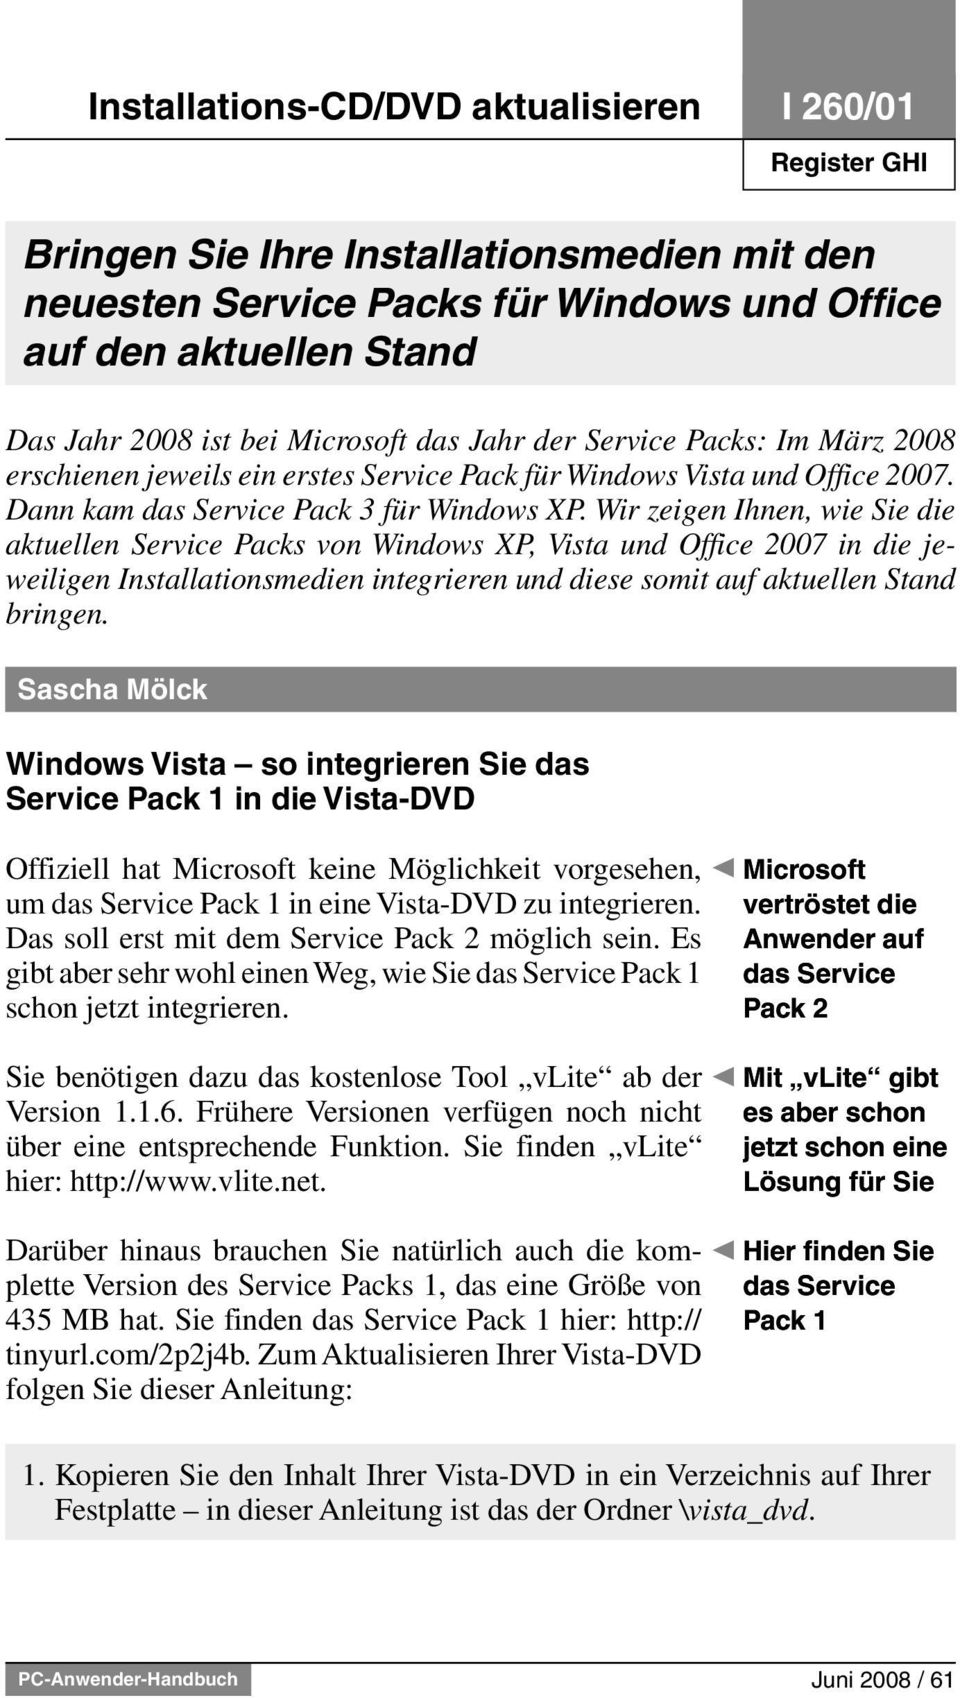 Wir zeigen Ihnen, wie Sie die aktuellen Service Packs von Windows XP, Vista und Office 2007 in die jeweiligen Installationsmedien integrieren und diese somit auf aktuellen Stand bringen.